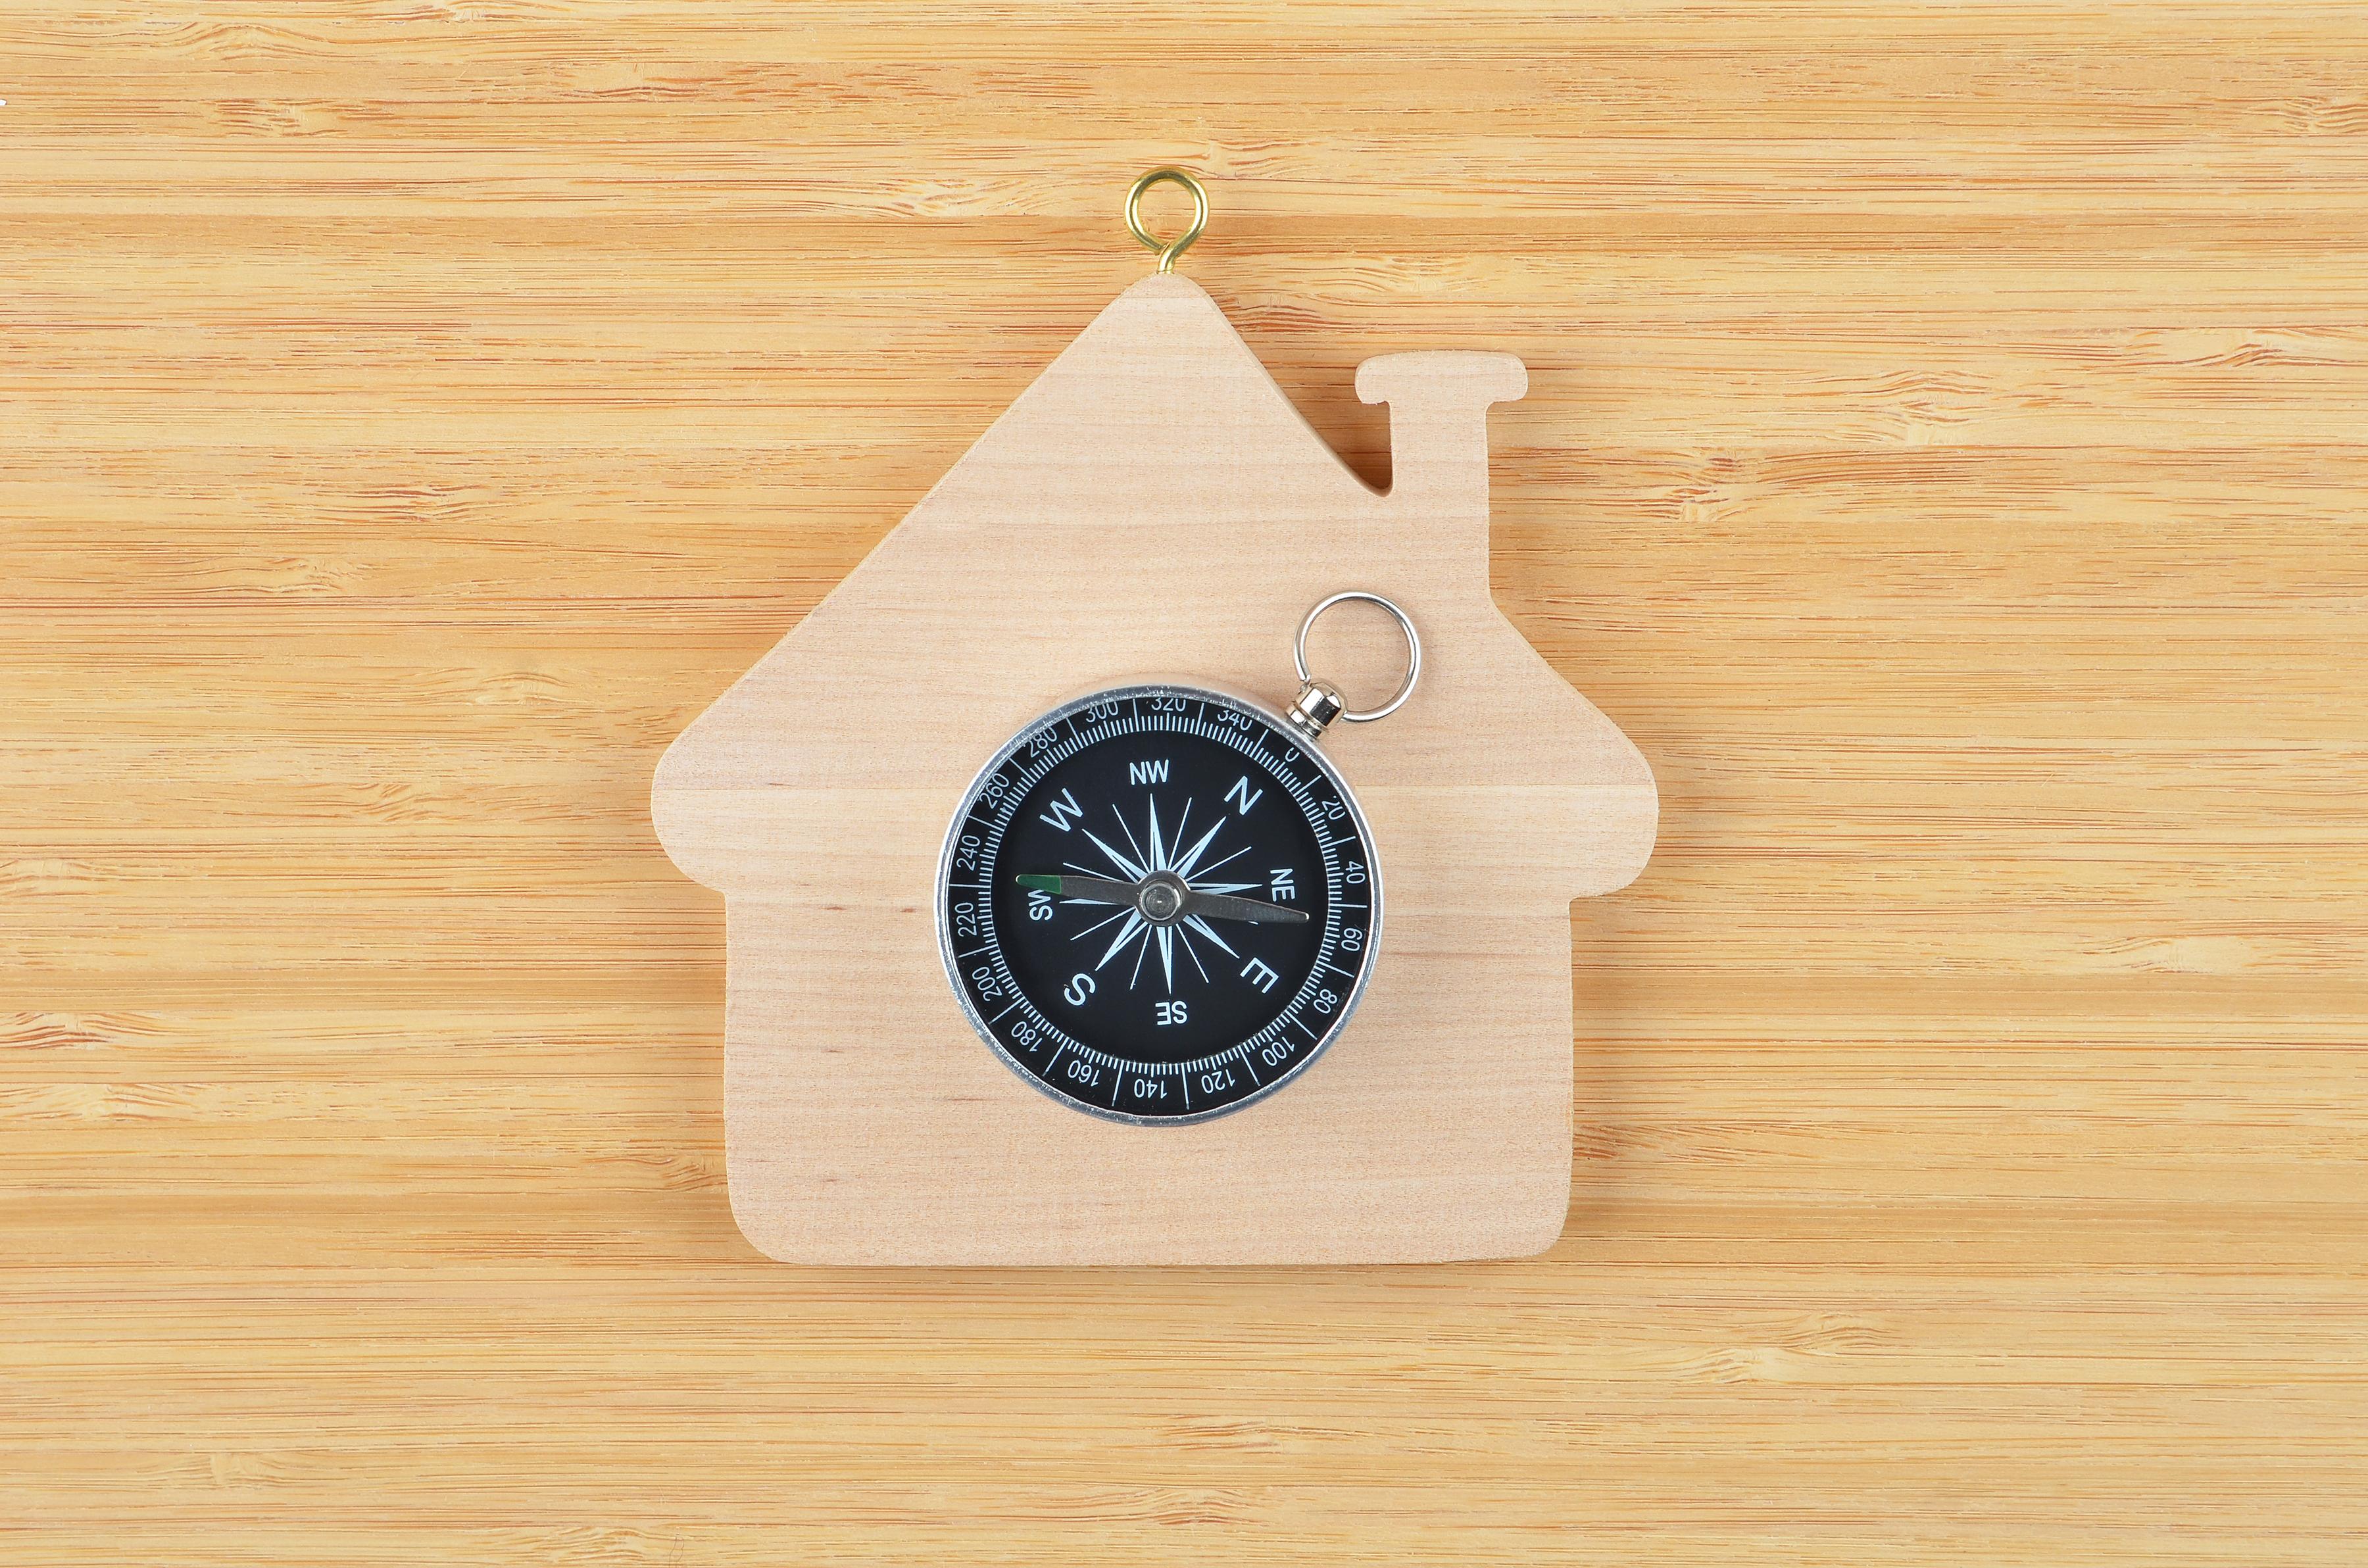 Ein Kompass kann bei der Bestimmung der Hausausrichtung behilflich sein